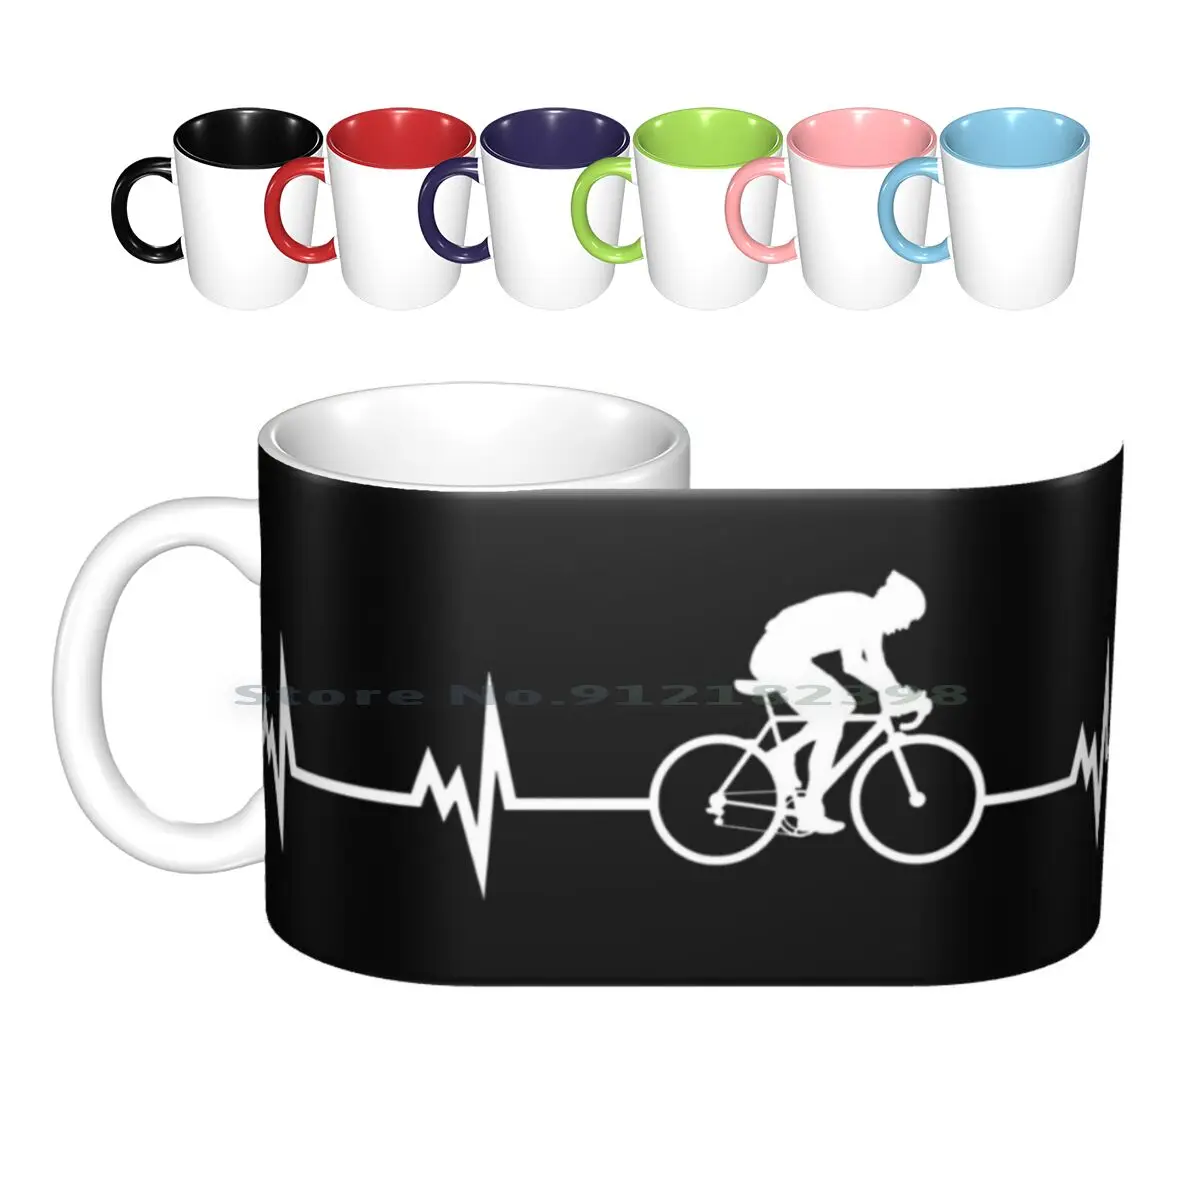 

Керамические кружки для езды на велосипеде и сердцебиения, кофейные чашки, Кружка для молока и чая, для езды на велосипеде, для езды на велосипеде, веселая и любимая, креативный тренд для велосипеда